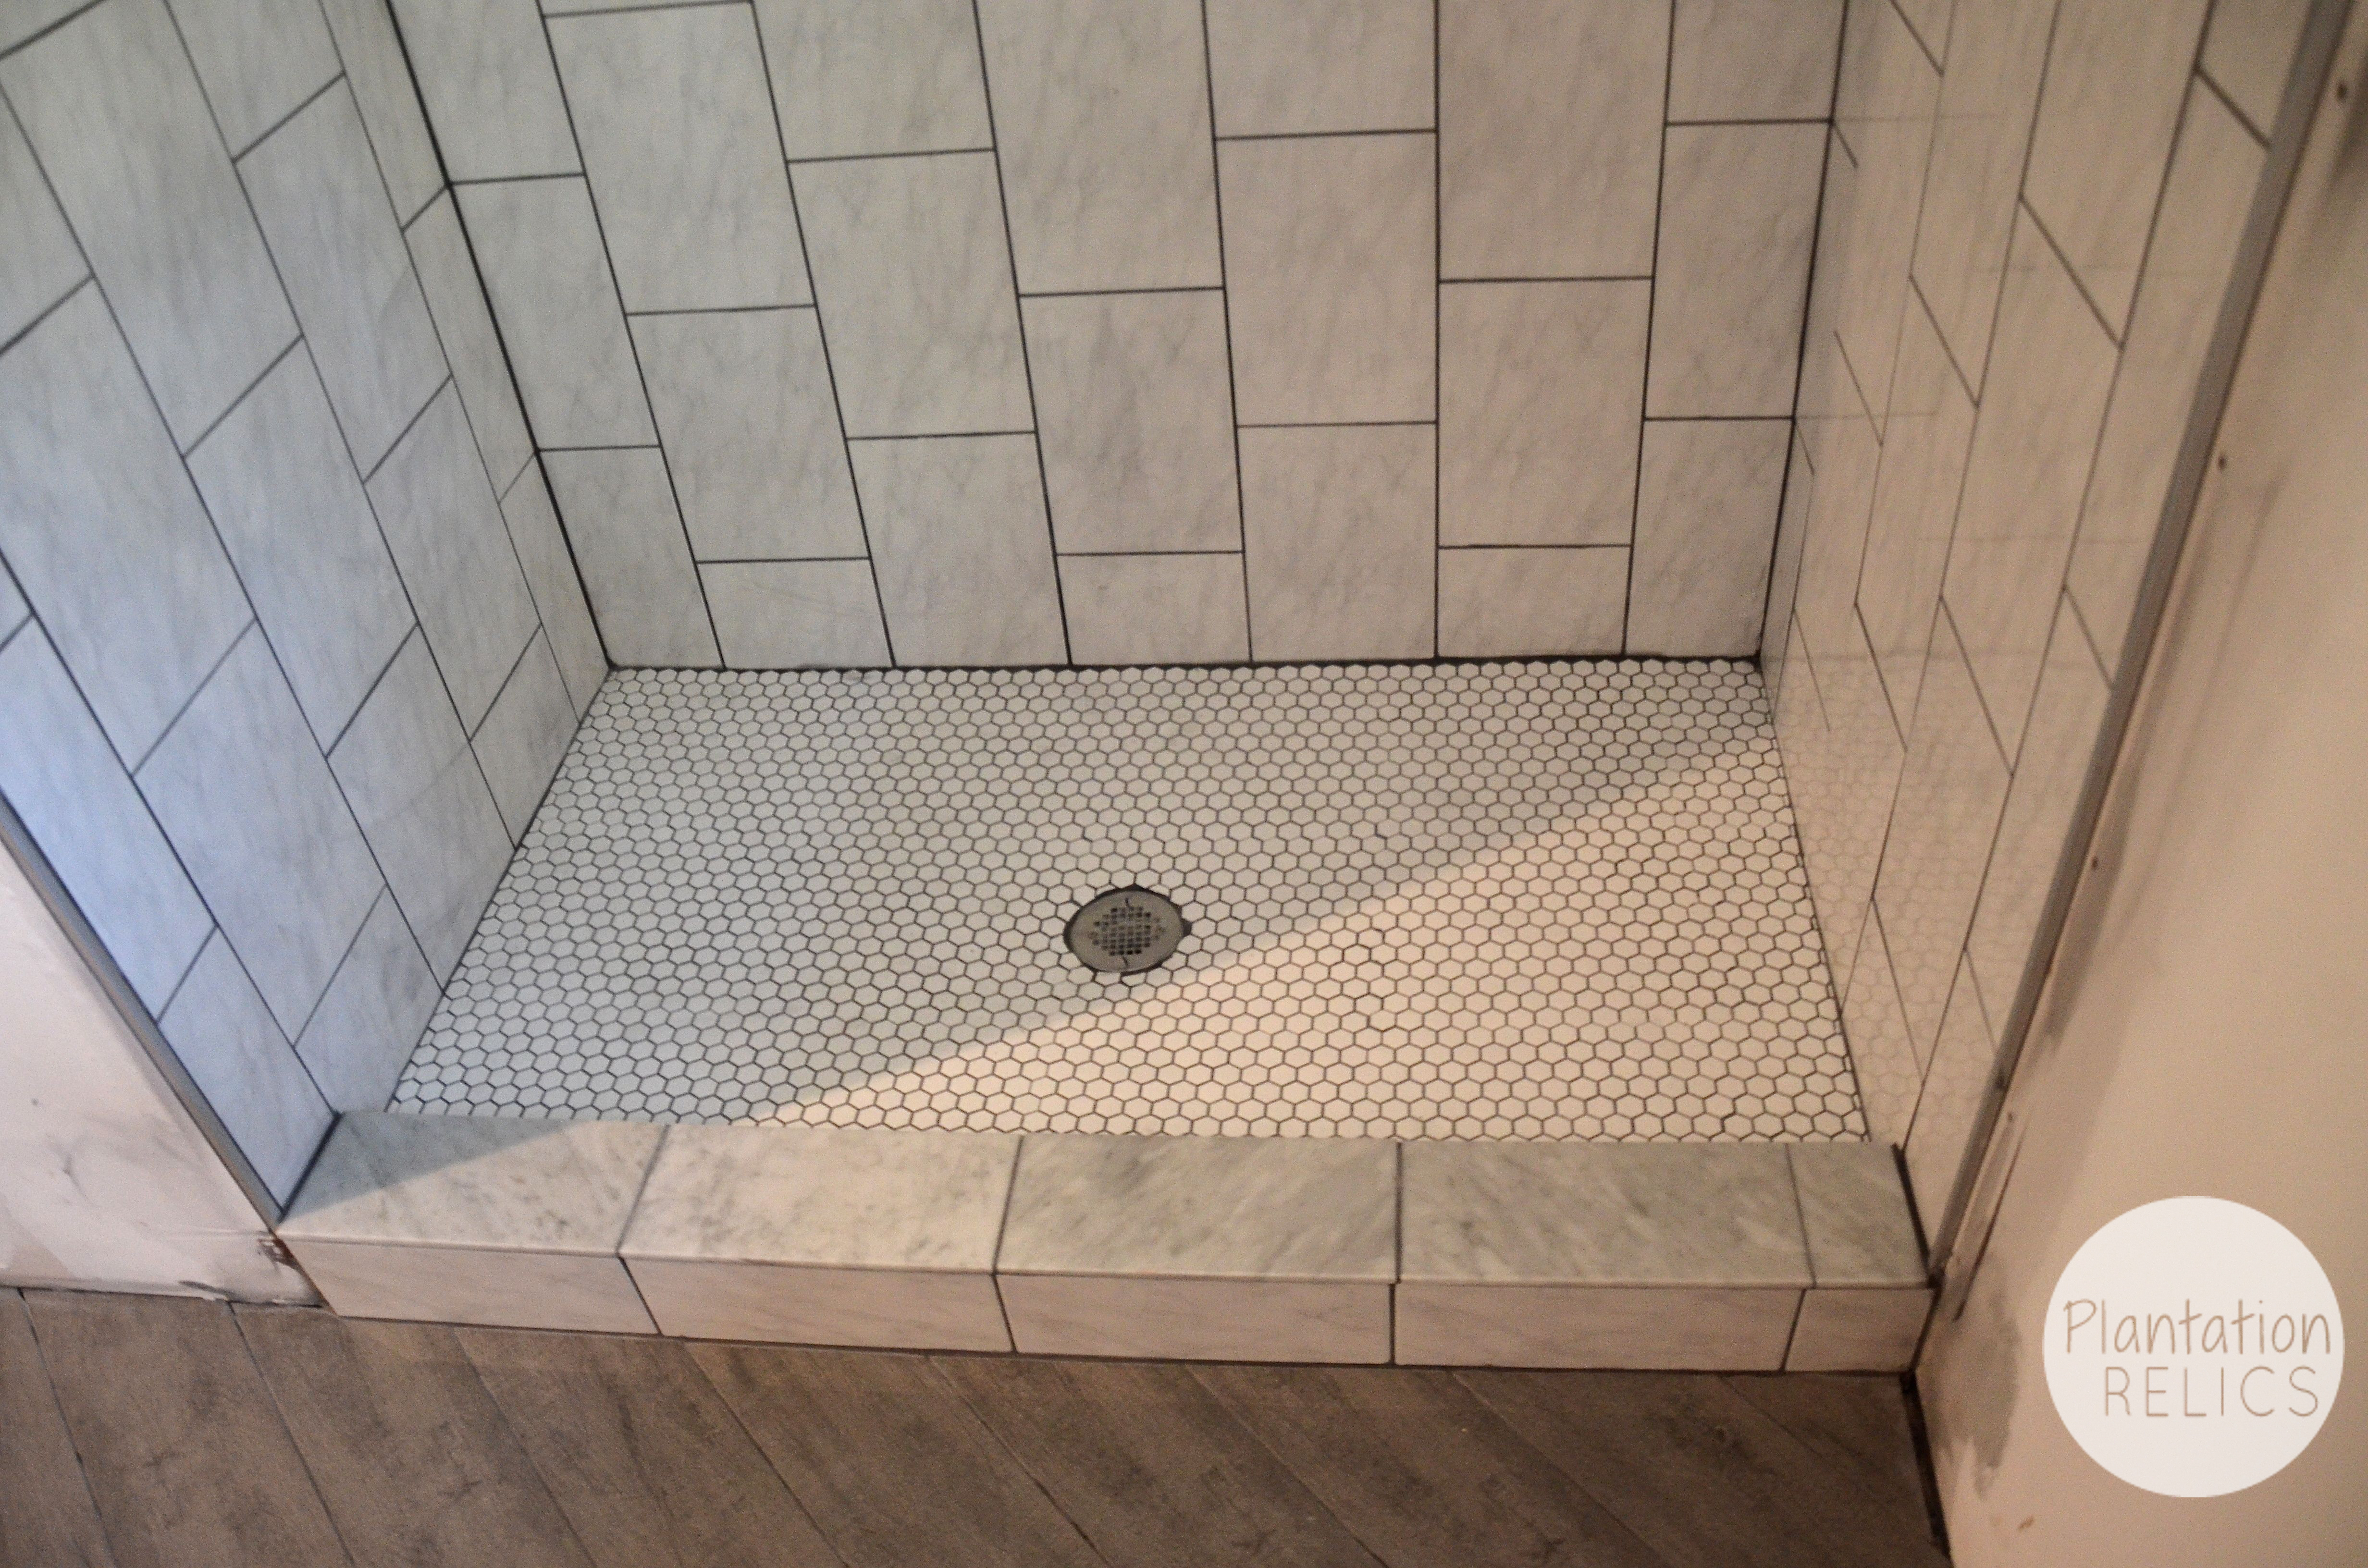 a-impressive-shower-glass-tile-patterns-shower-tile-pattern-idea-shower-tile-installation-patterns-shower-tile-ideas-images-shower-tile-installation-ideas-shower-tile-insert-ideas-show